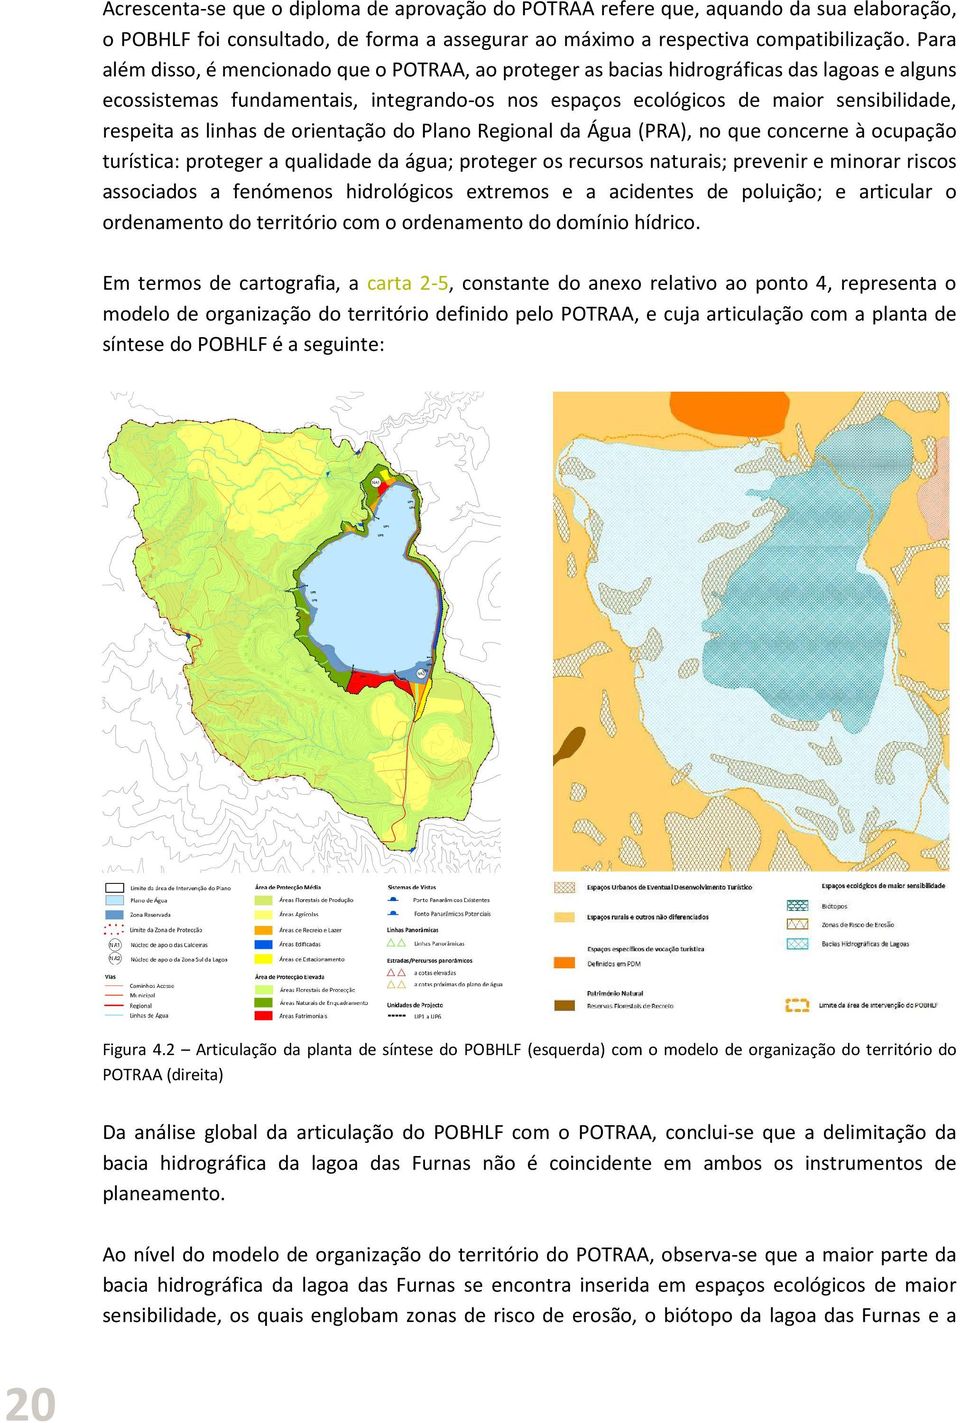 linhas de orientação do Plano Regional da Água (PRA), no que concerne à ocupação turística: proteger a qualidade da água; proteger os recursos naturais; prevenir e minorar riscos associados a